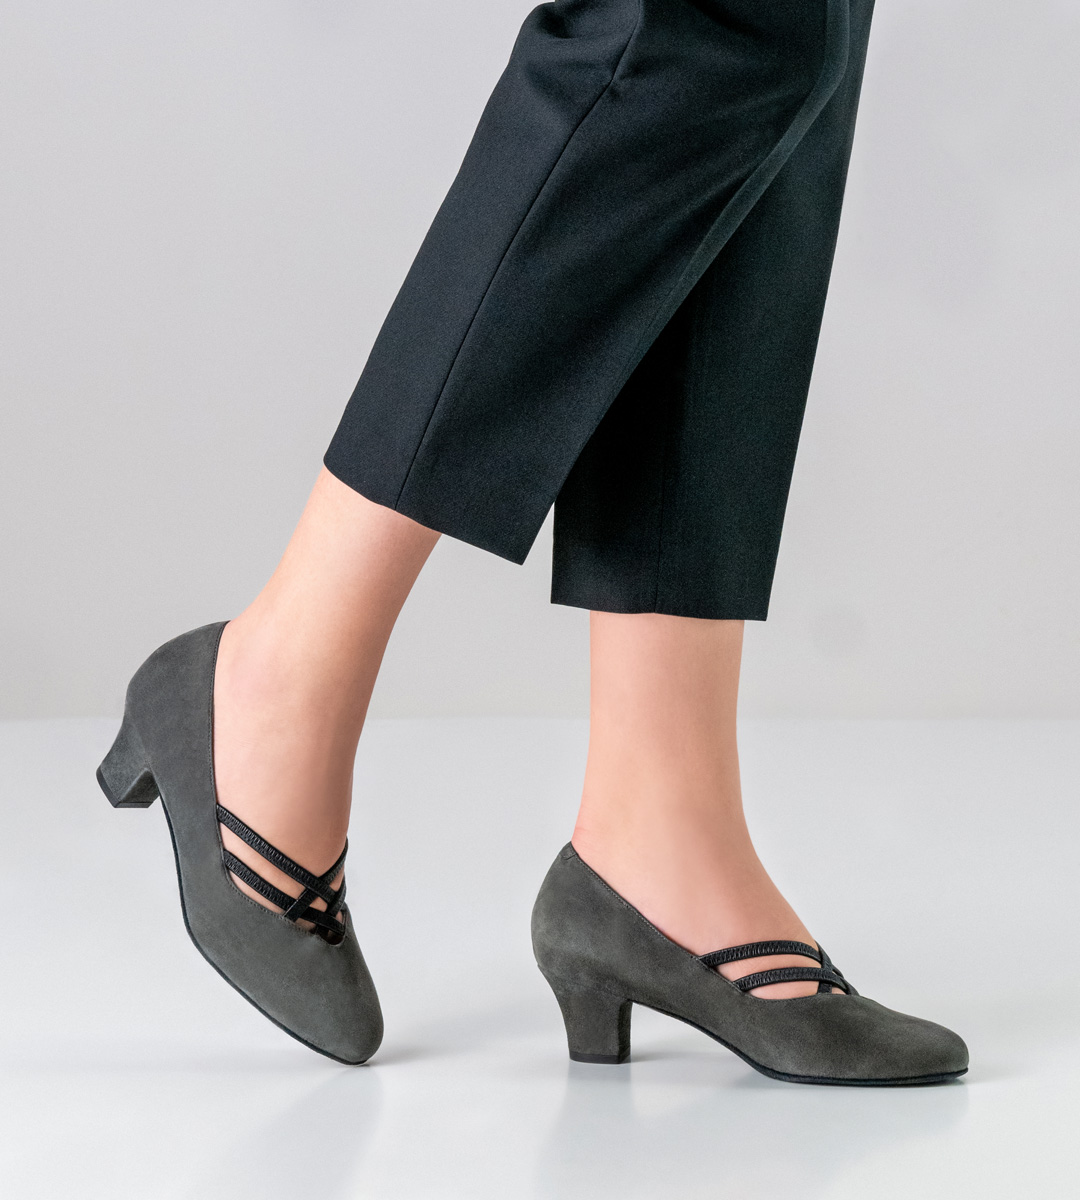 Chaussures de danse grises pour femmes de Werner Kern avec semelle amovible